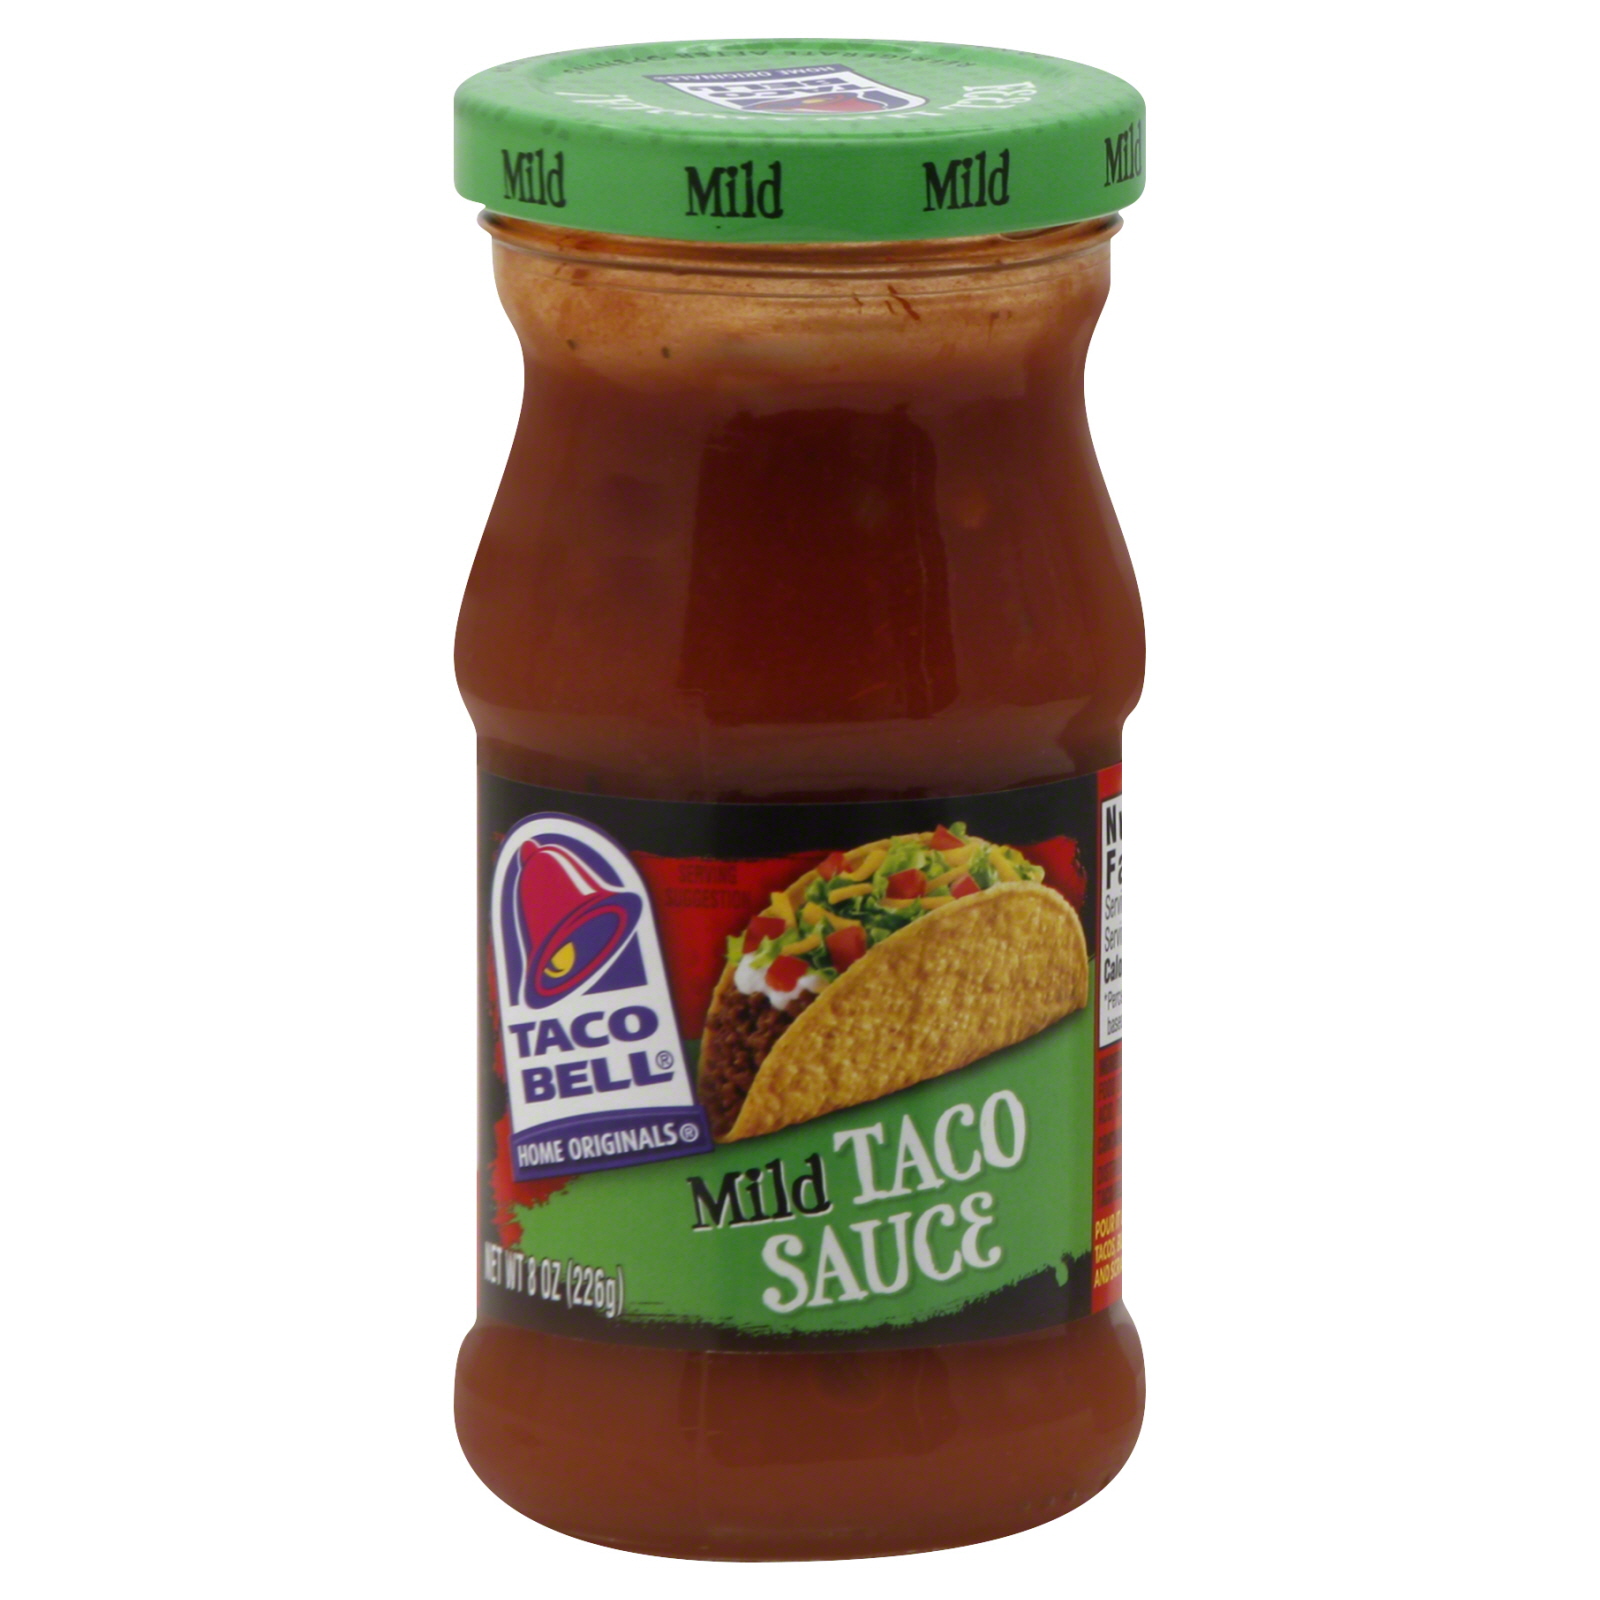 Taco Bell Home Originals Taco Sauce, Mild, 8 oz (226 g)